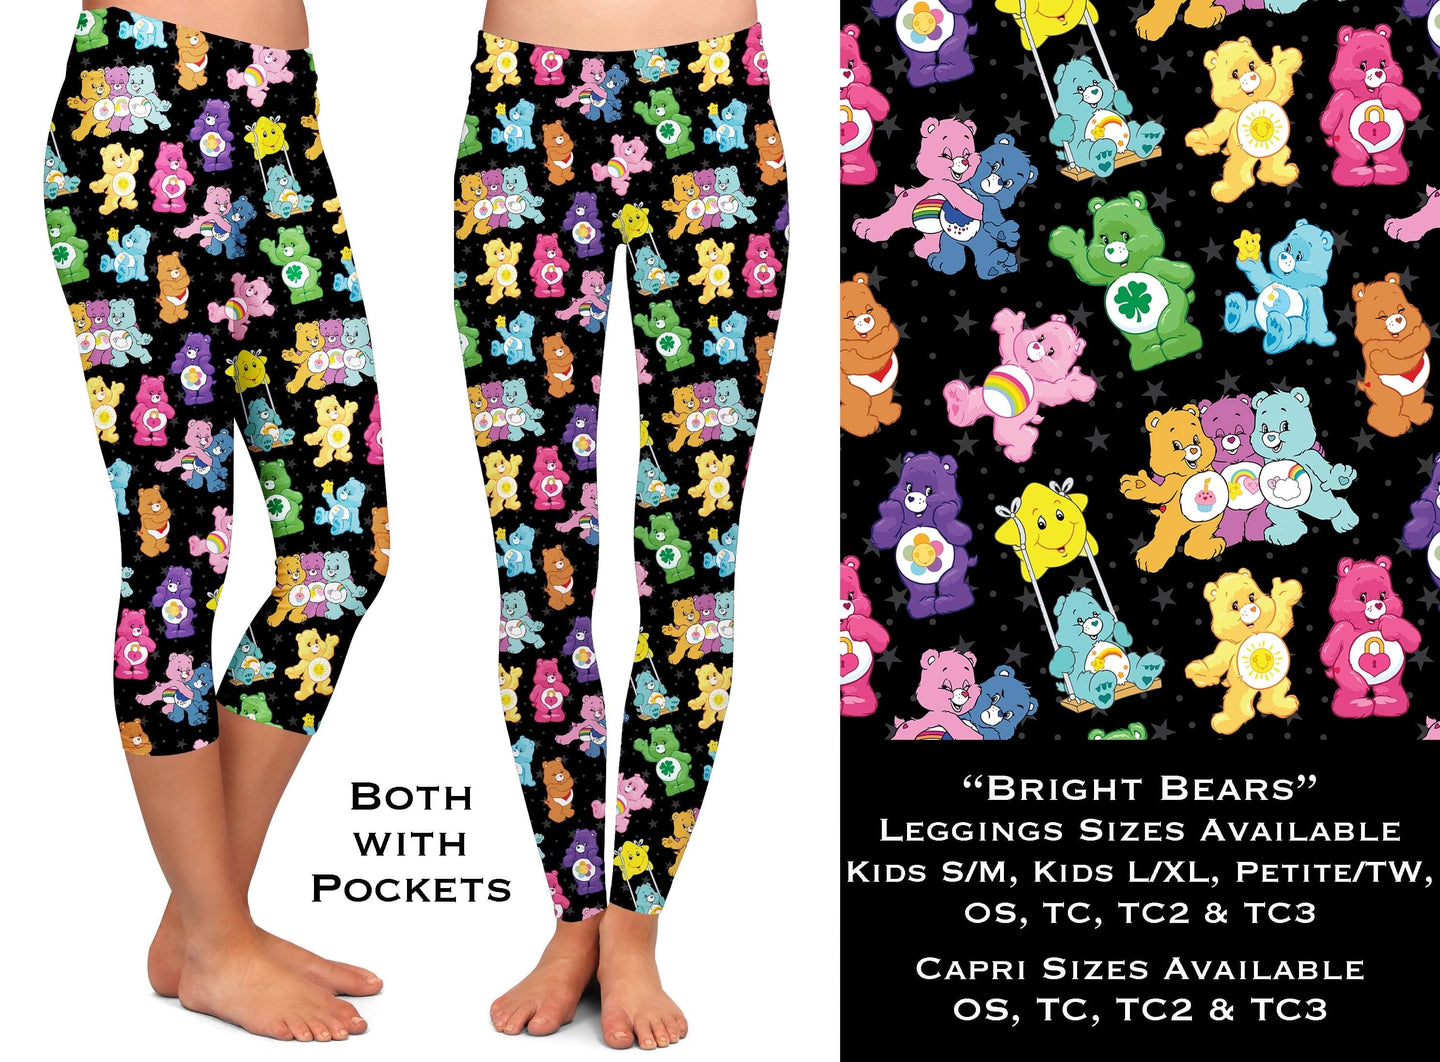 B111 - Bright Bears Full & Capri Leggings